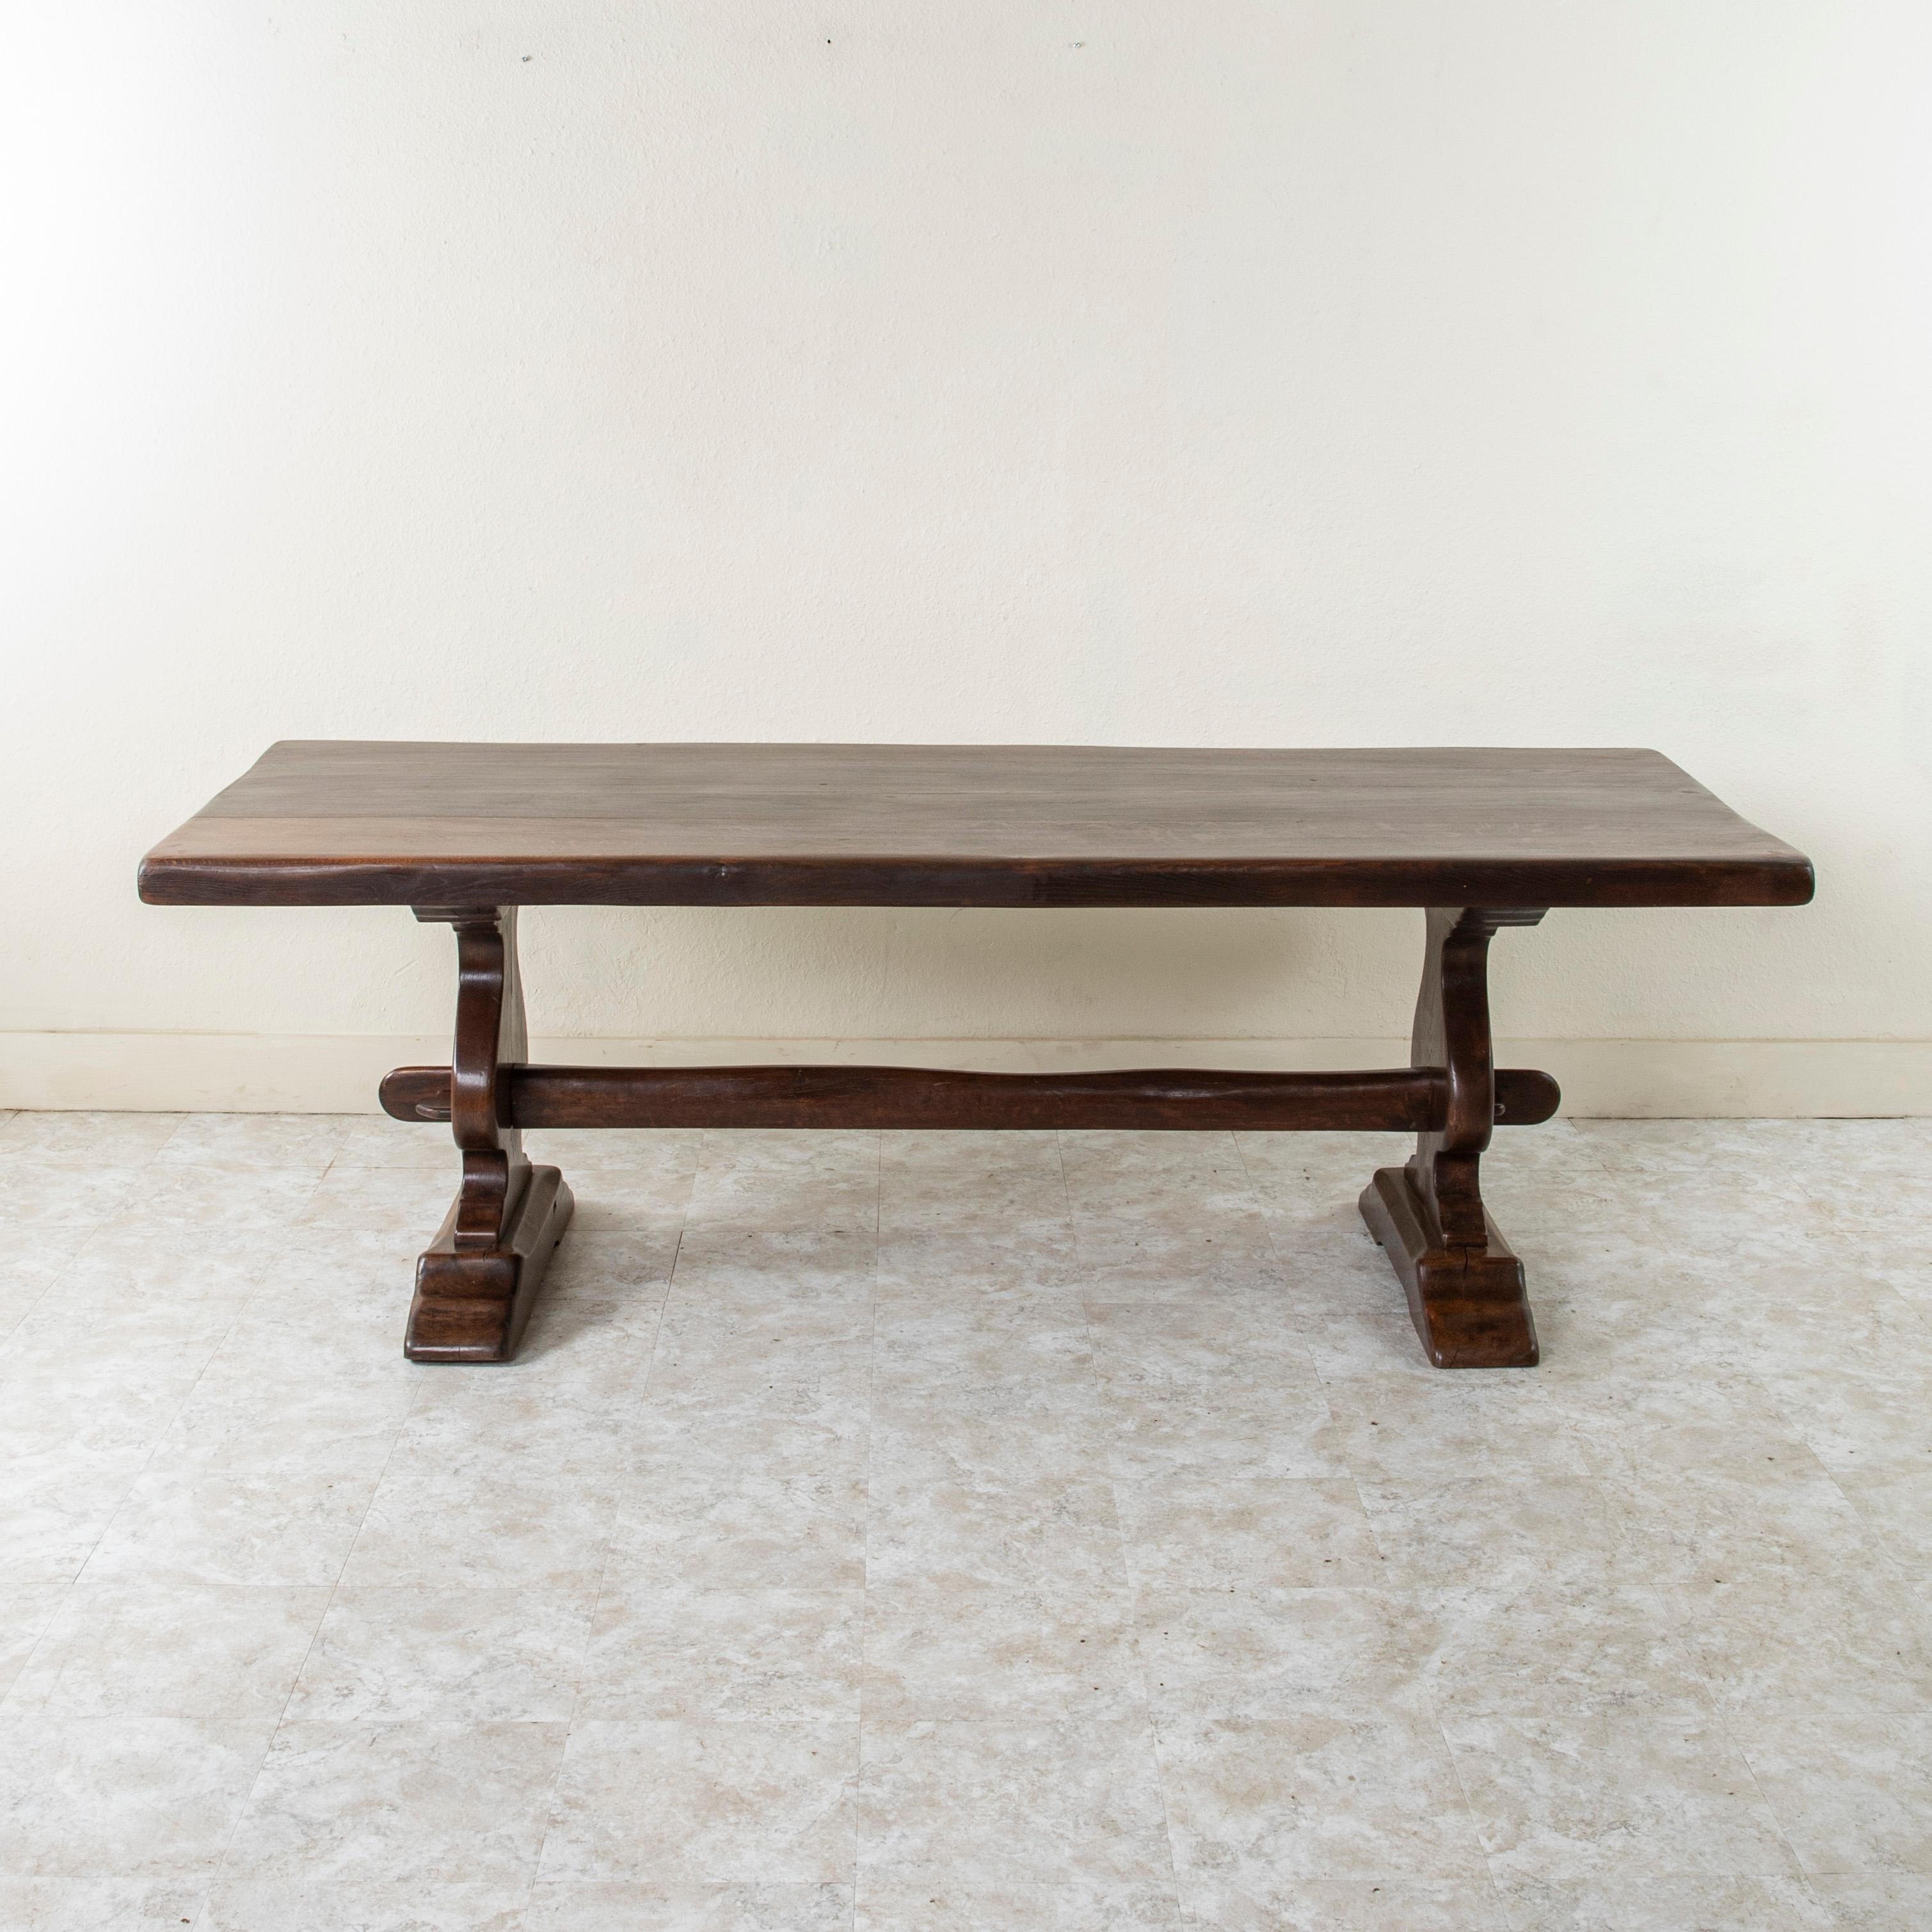 Dieser große, handgefertigte Klostertisch oder Esstisch aus Eiche von der Jahrhundertwende in der Normandie, Frankreich, hat eine 2,5 Zoll dicke Platte, die aus vier Holzbrettern besteht. Drei Keilnuten verlaufen über die gesamte Länge des Tisches,